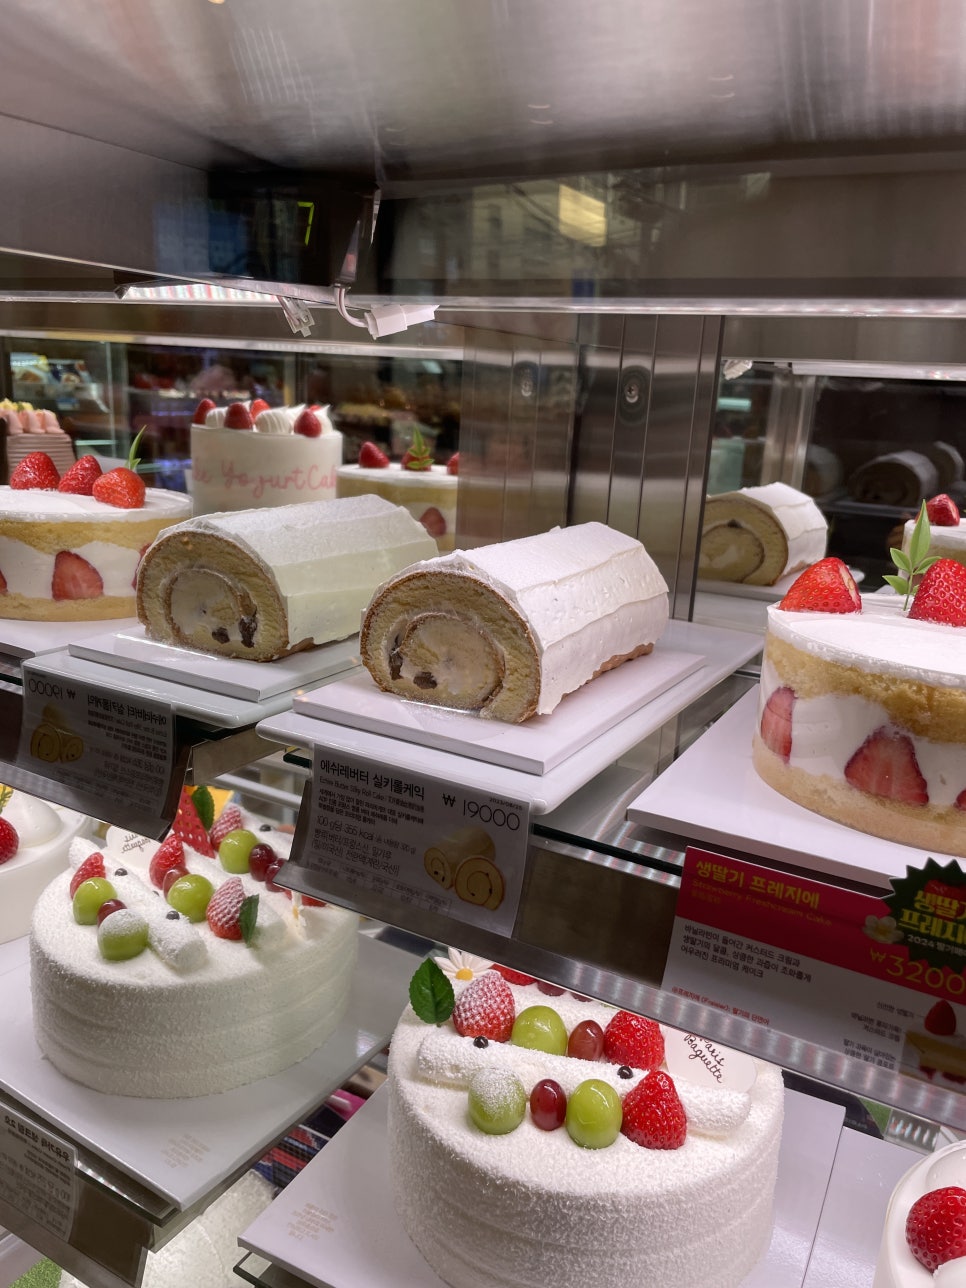 생일 케이크 추천 파리바게트 케이크 종류 가격 모양 다양